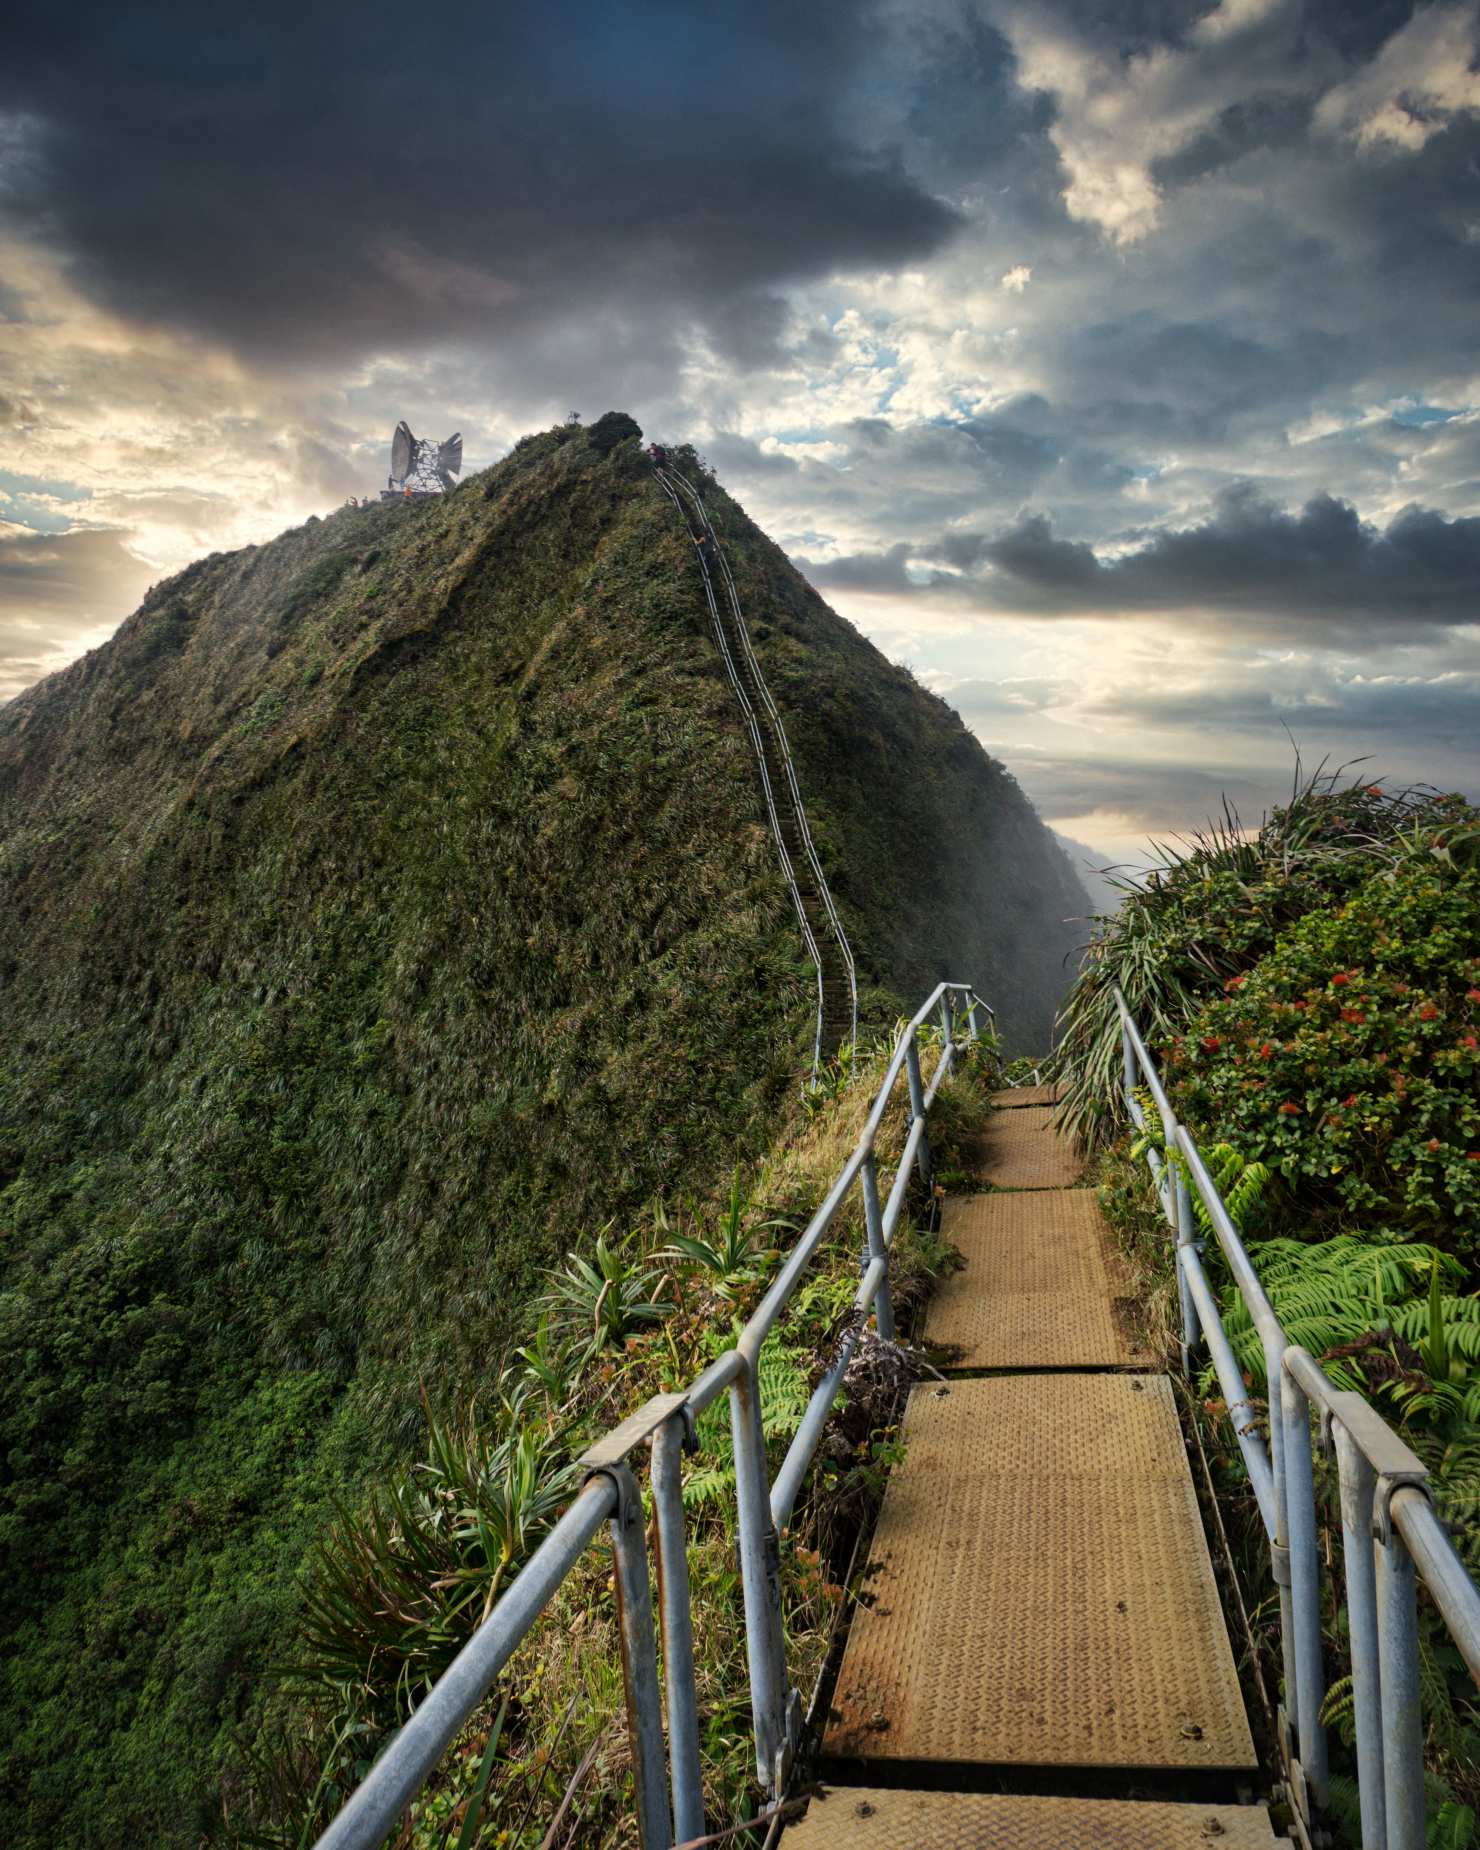 Die Haiku-Treppe, auch „Treppe zum Himmel“ genannt, ist eine tückische und verführerische Stahlkonstruktion mit 3,922 Stufen. Ursprünglich im Jahr 1942 erbaut, ermöglichte die Treppe den Zugang zur streng geheimen Radiostation Haʻikū, einer Kommunikationseinrichtung der US-Marine während des Zweiten Weltkriegs. Diese Treppen überspannen die majestätische Ko'olau-Bergkette und bieten einen atemberaubenden Panoramablick auf Kaneohe und die Kaneohe Bay.